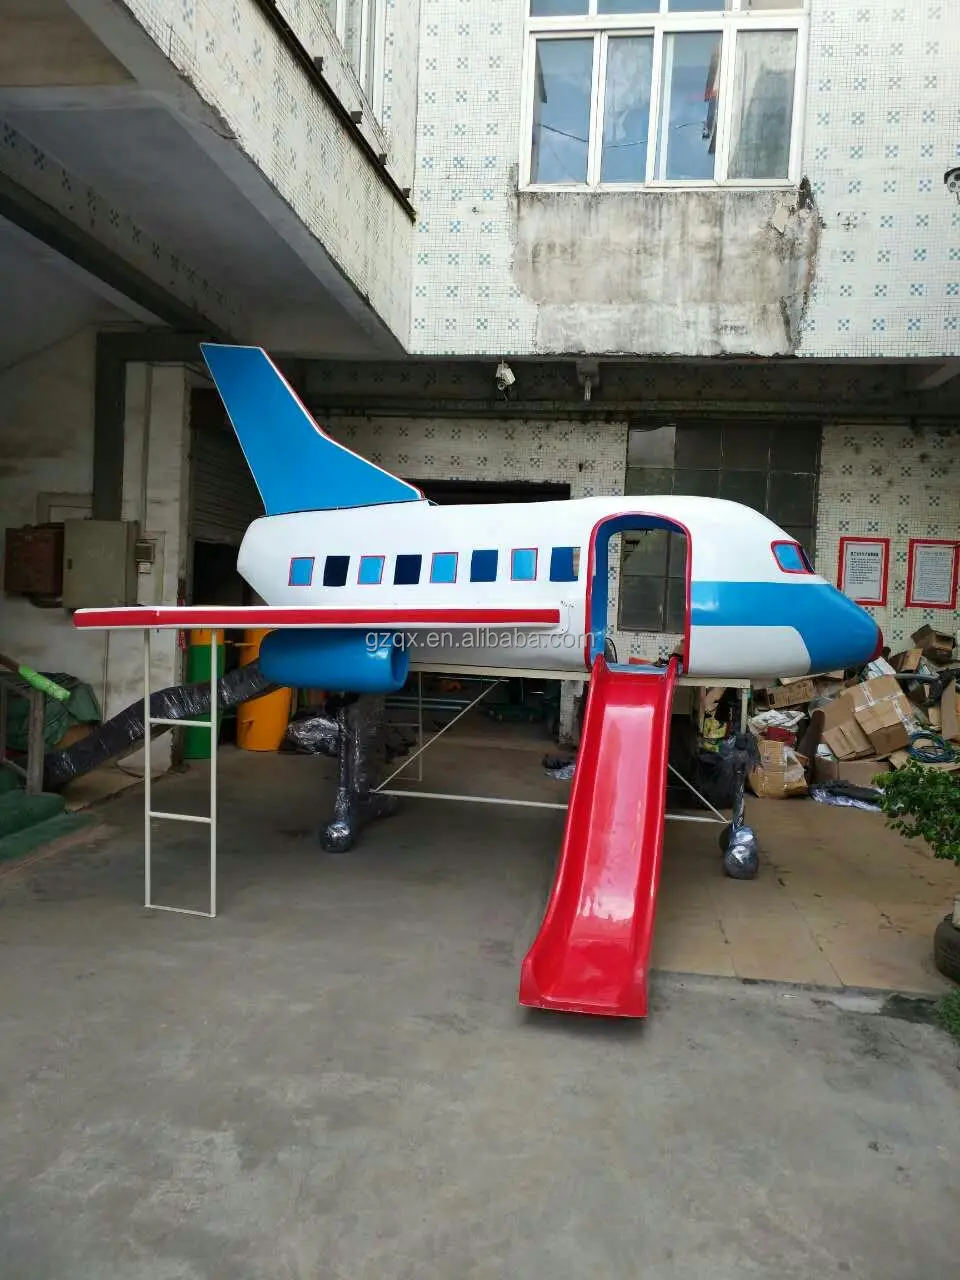 CANIGHT 2 Pçs Taxiando Para Brinquedos De Avião De Avião Play Set Ao Ar  Livre Modelo